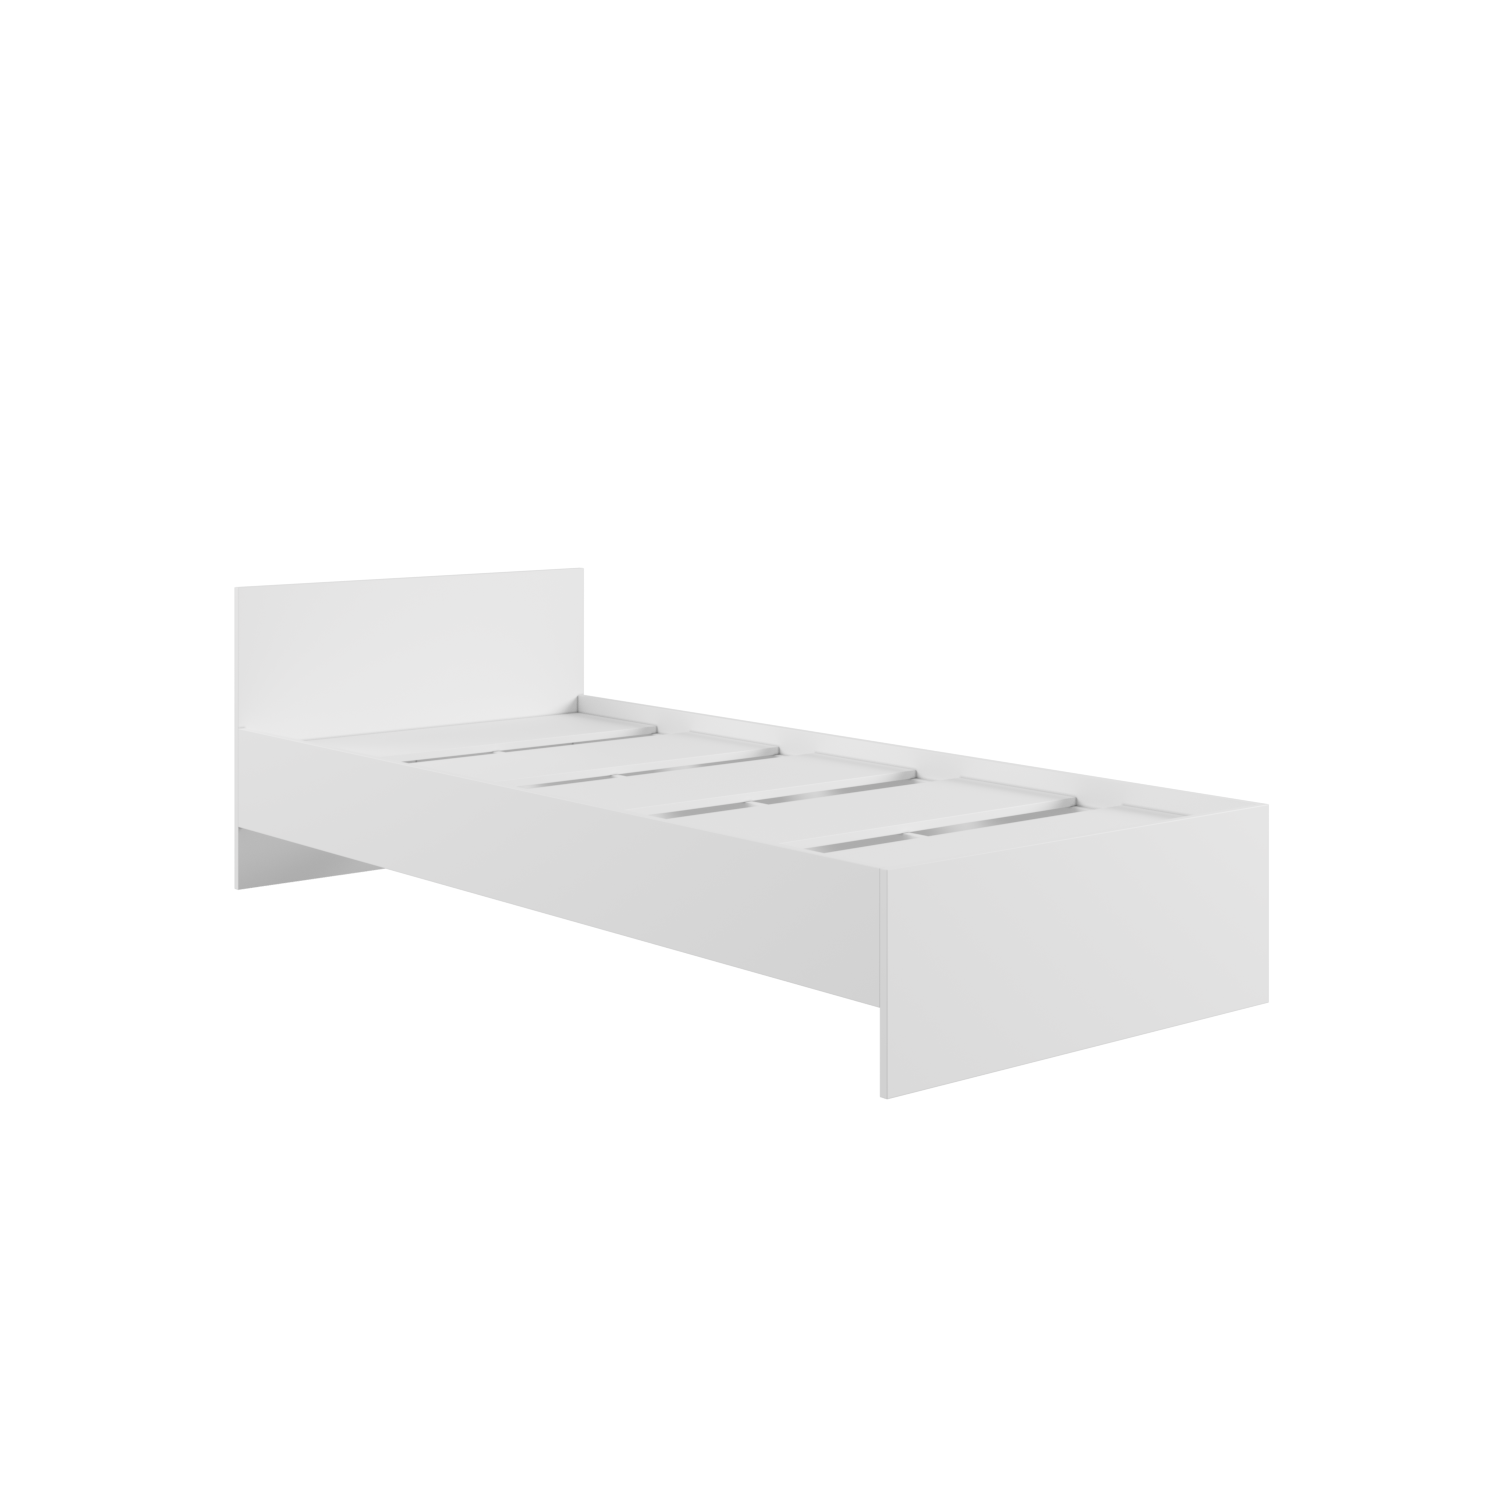 Кровать М. 900 Мадера